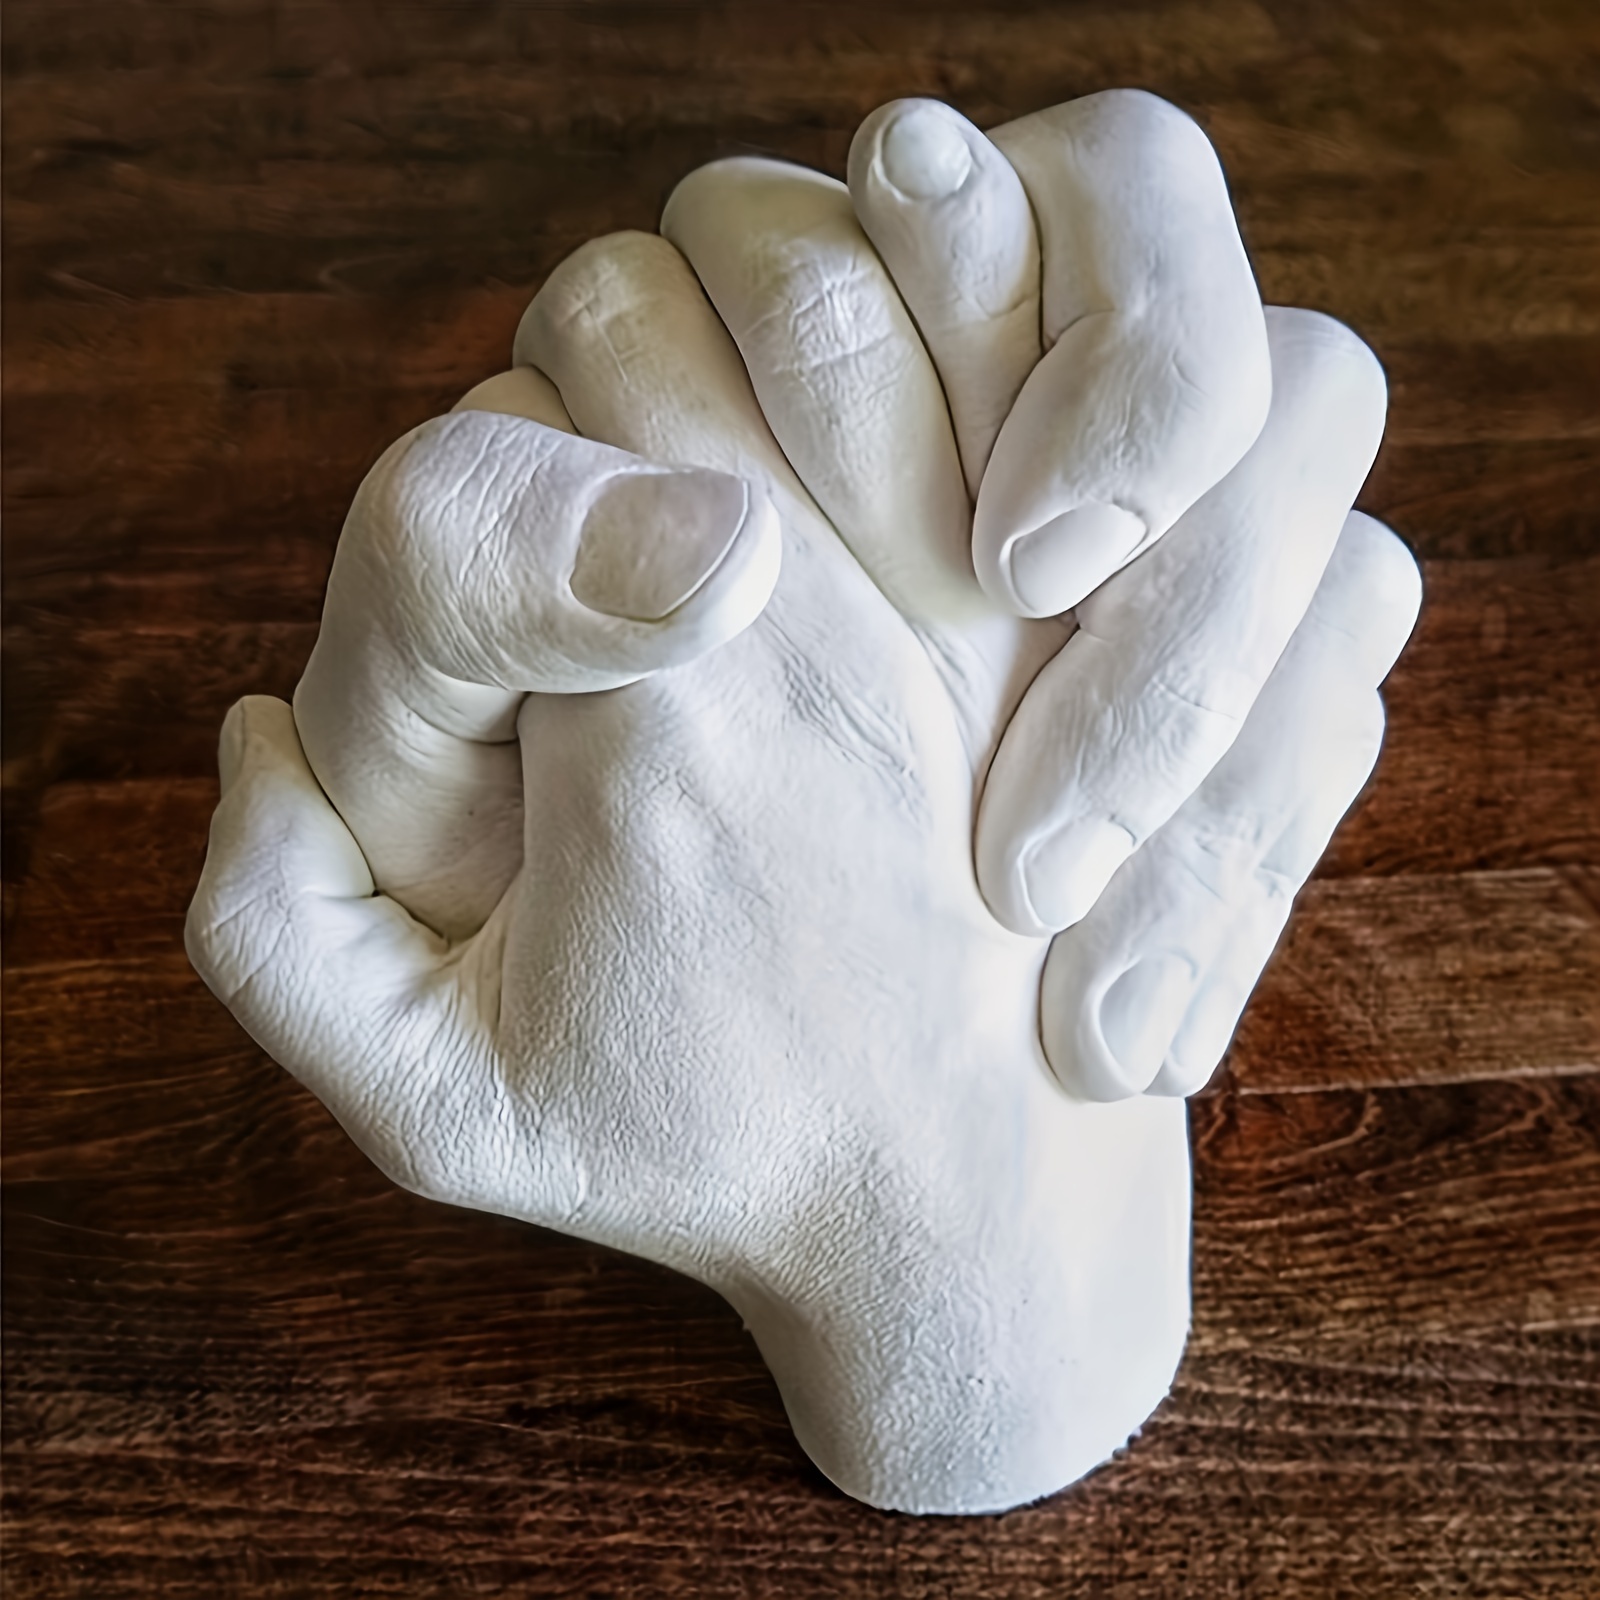 Baby Plaster Hand Mold - Temu